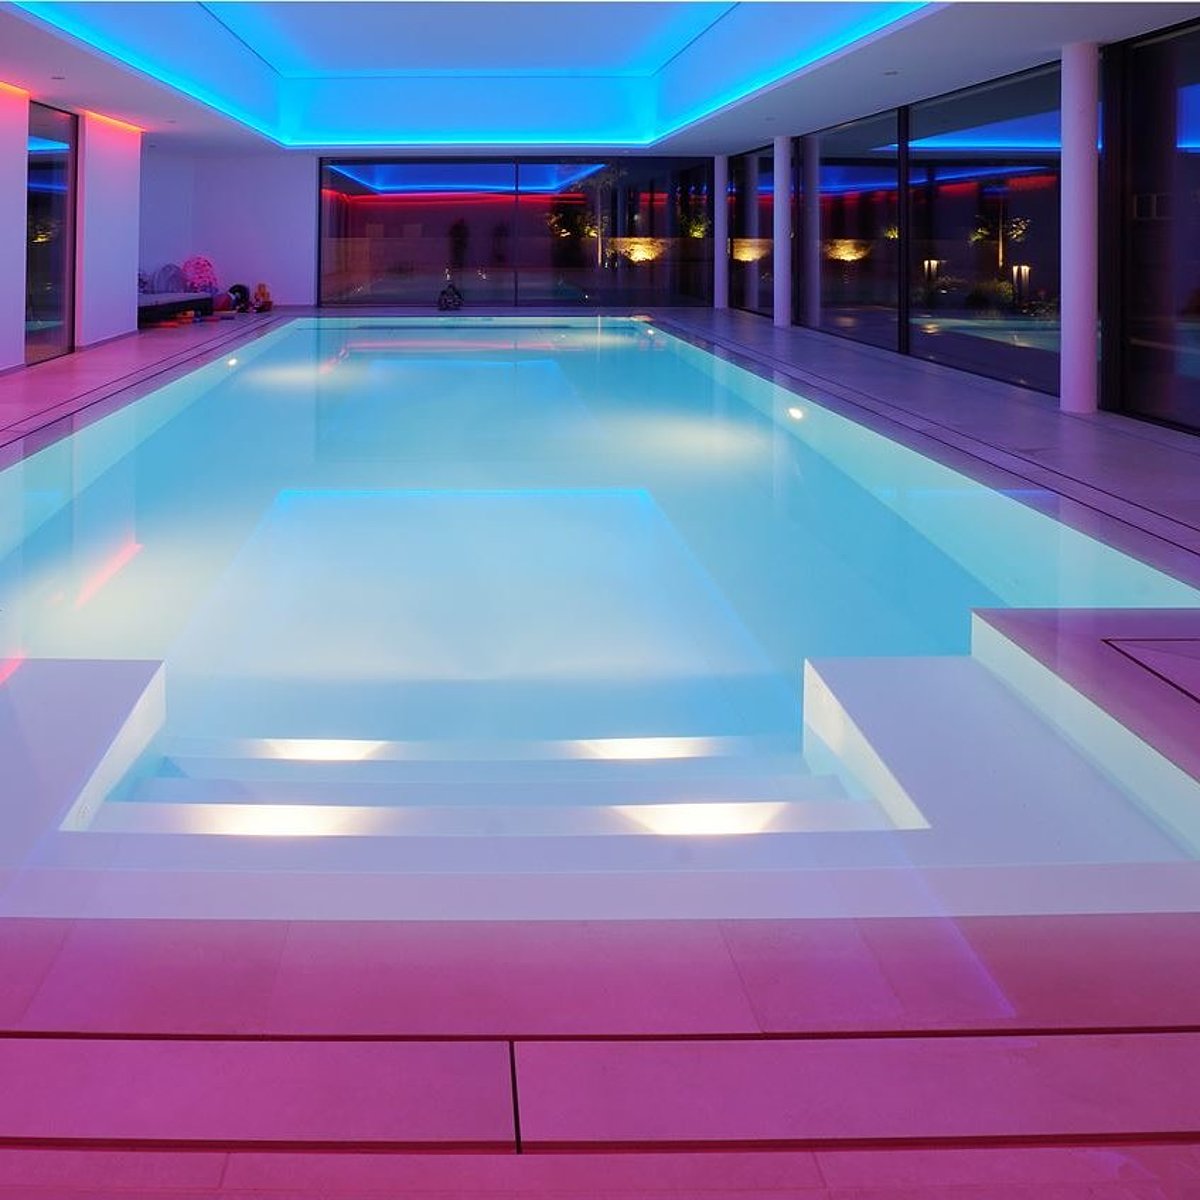 Binnenzwembad met paarsblauwe verlichting.